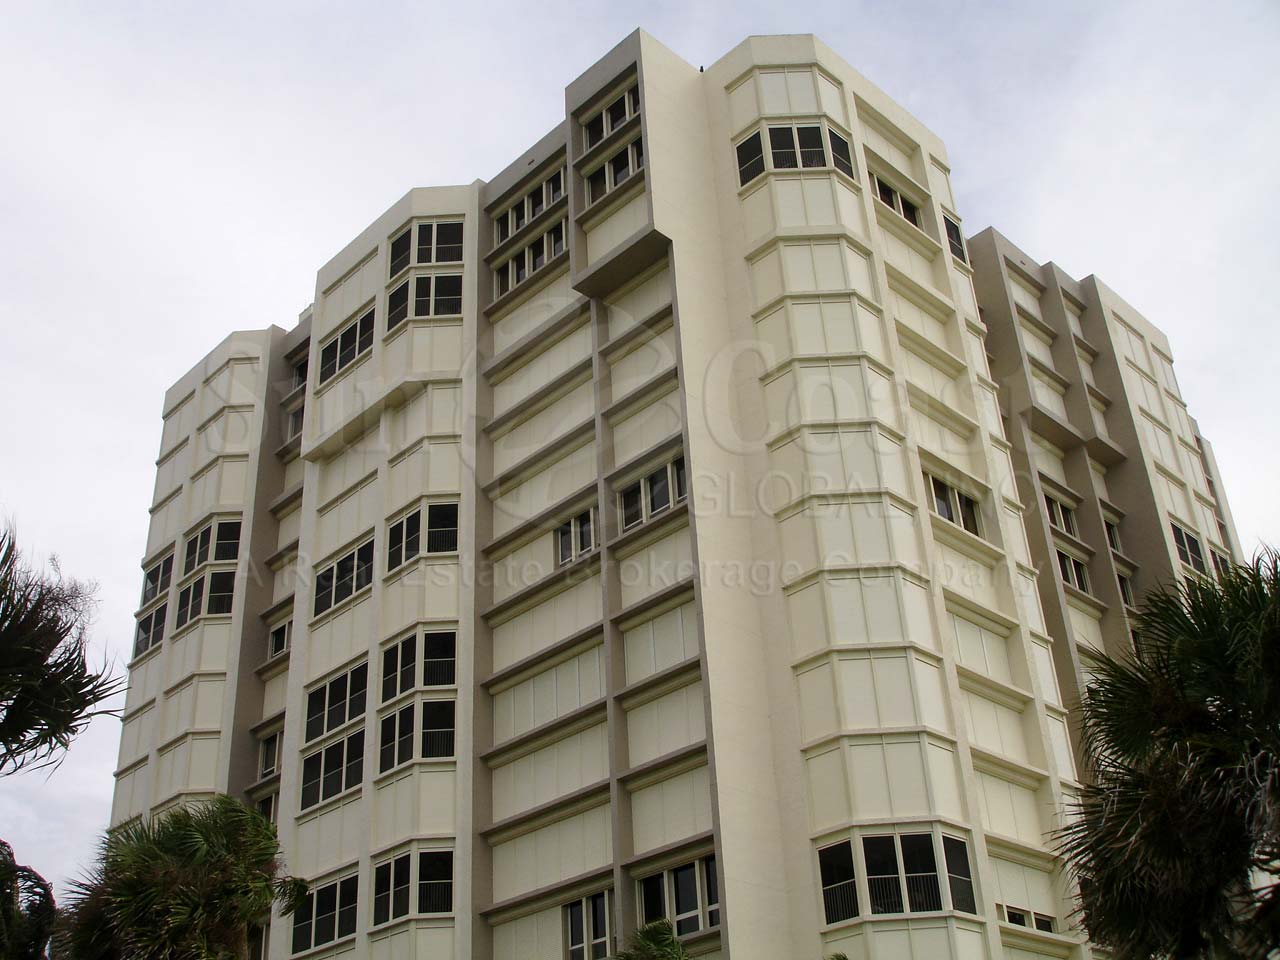 La Mer Condominium Building